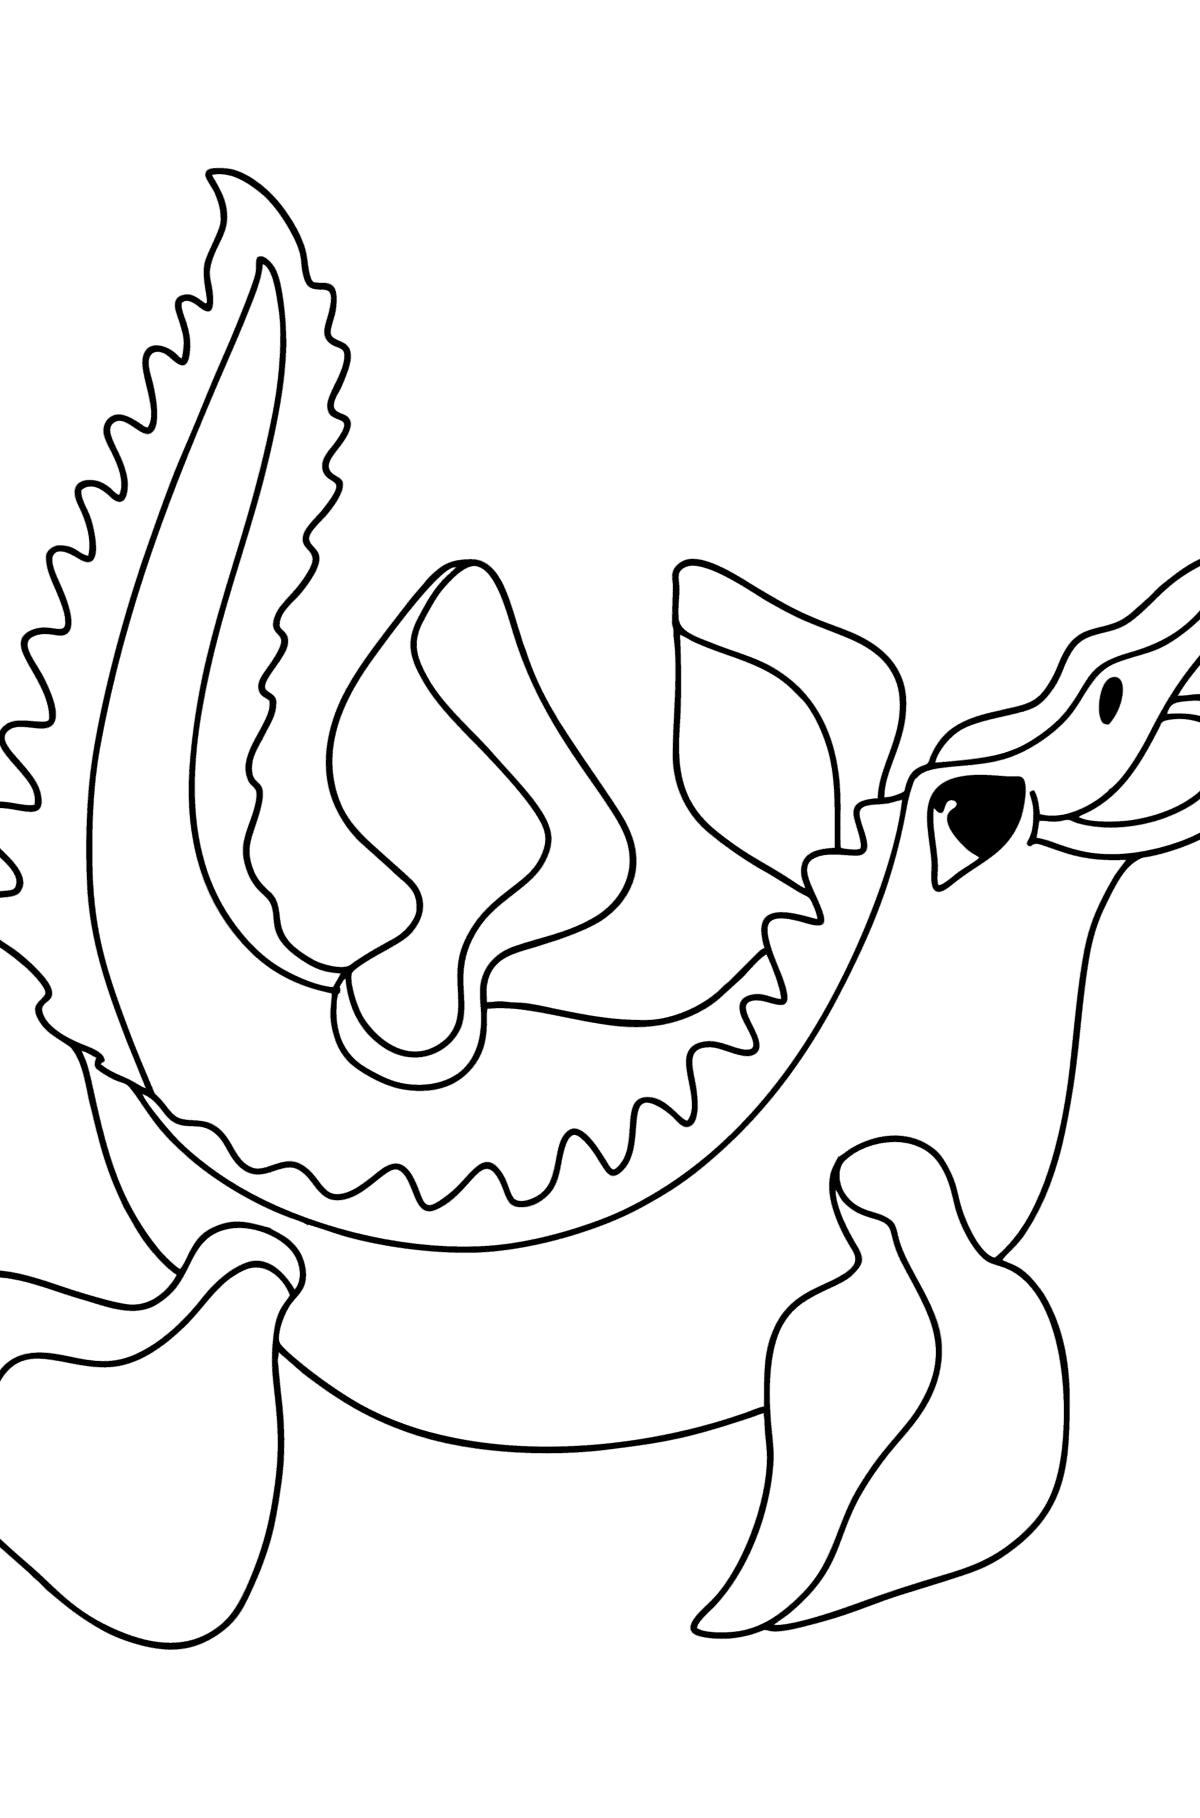 Ausmalbild Mosasaurus - Malvorlagen für Kinder